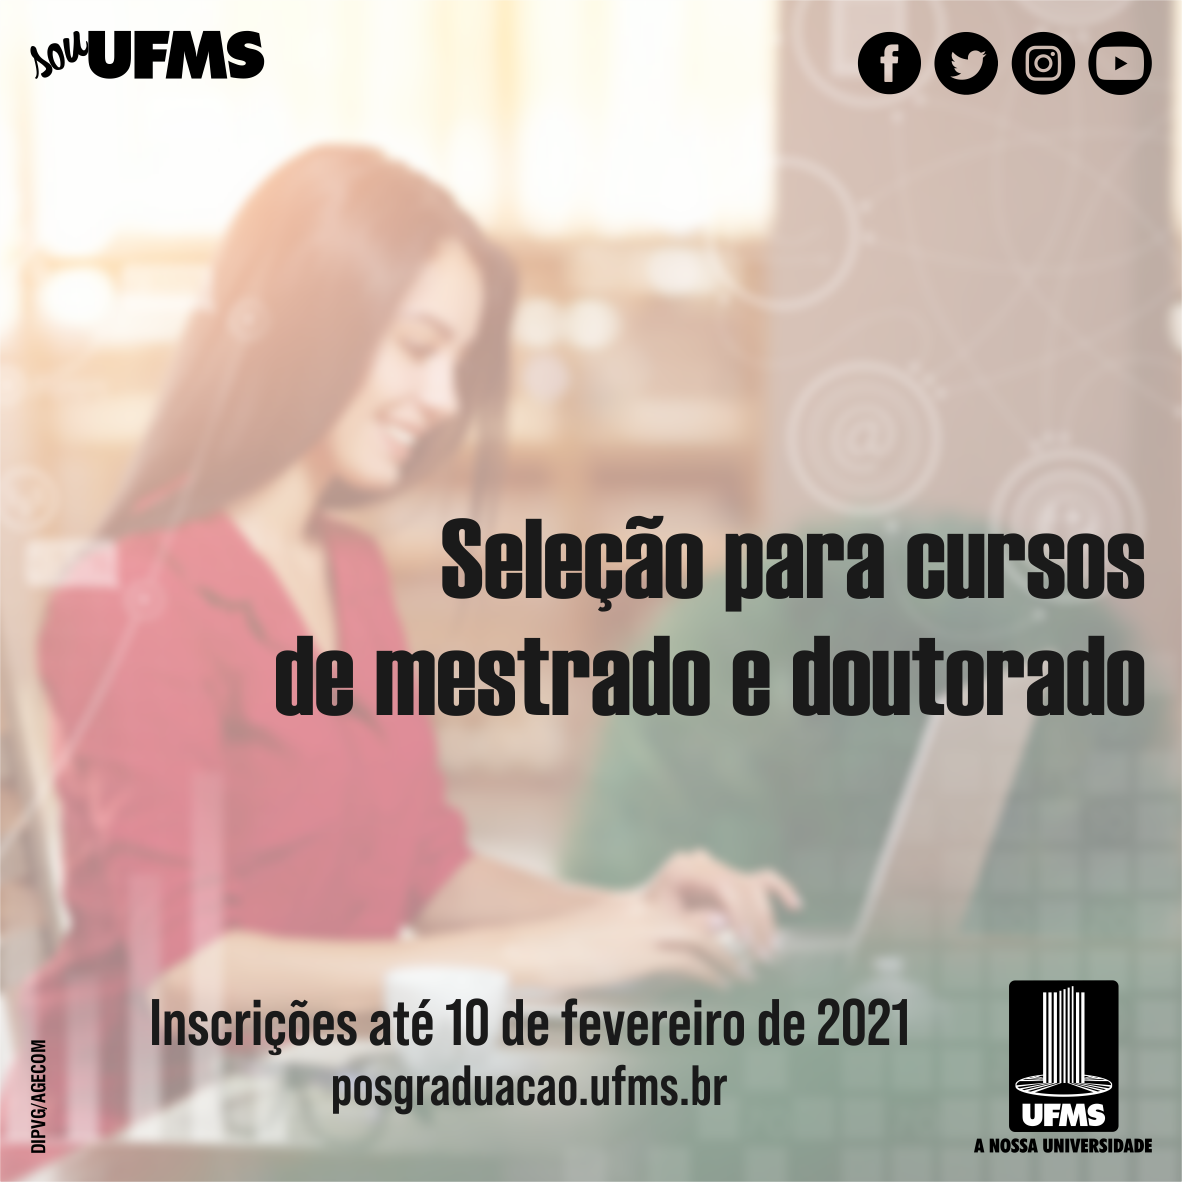 Cursos de Mestrado e Doutorado têm mais de 850 oportunidades – UFMS